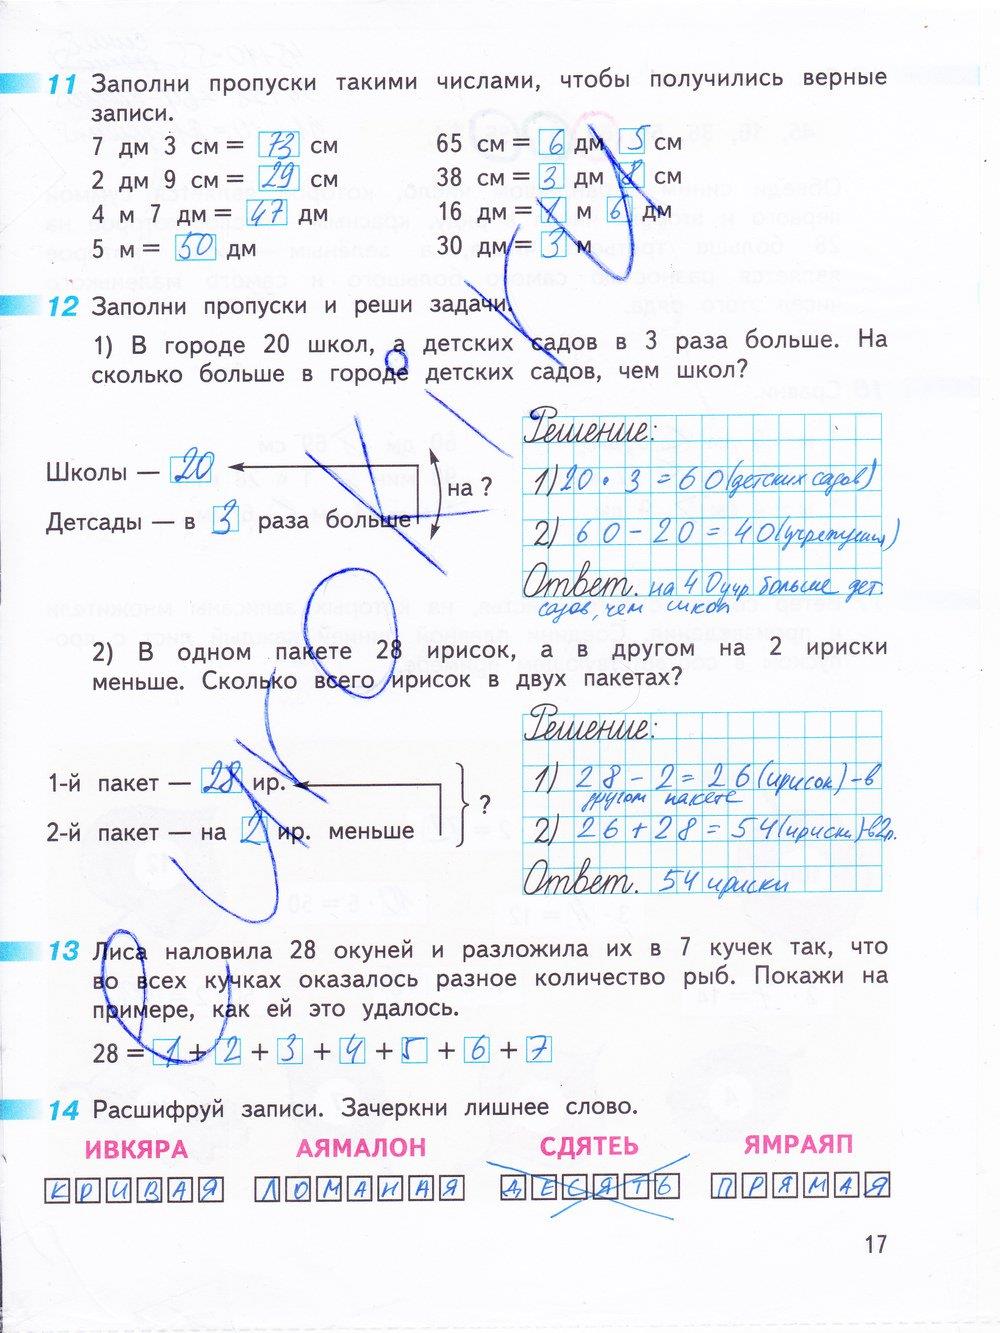 гдз 3 класс рабочая тетрадь часть 1 страница 17 математика Дорофеев, Миракова